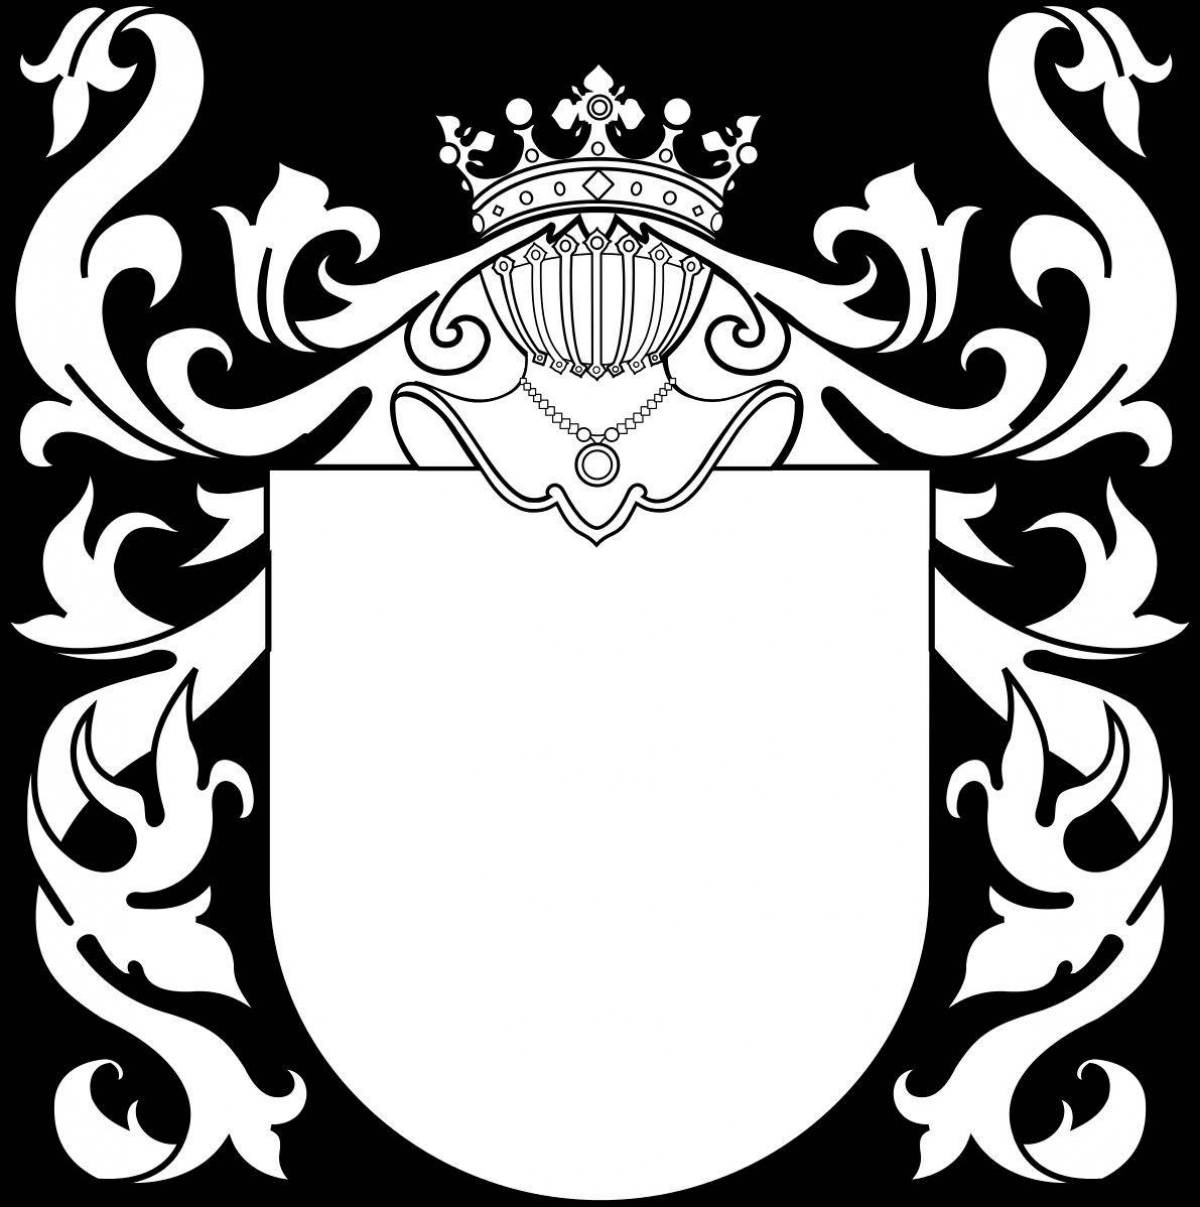 Енгалычев герб